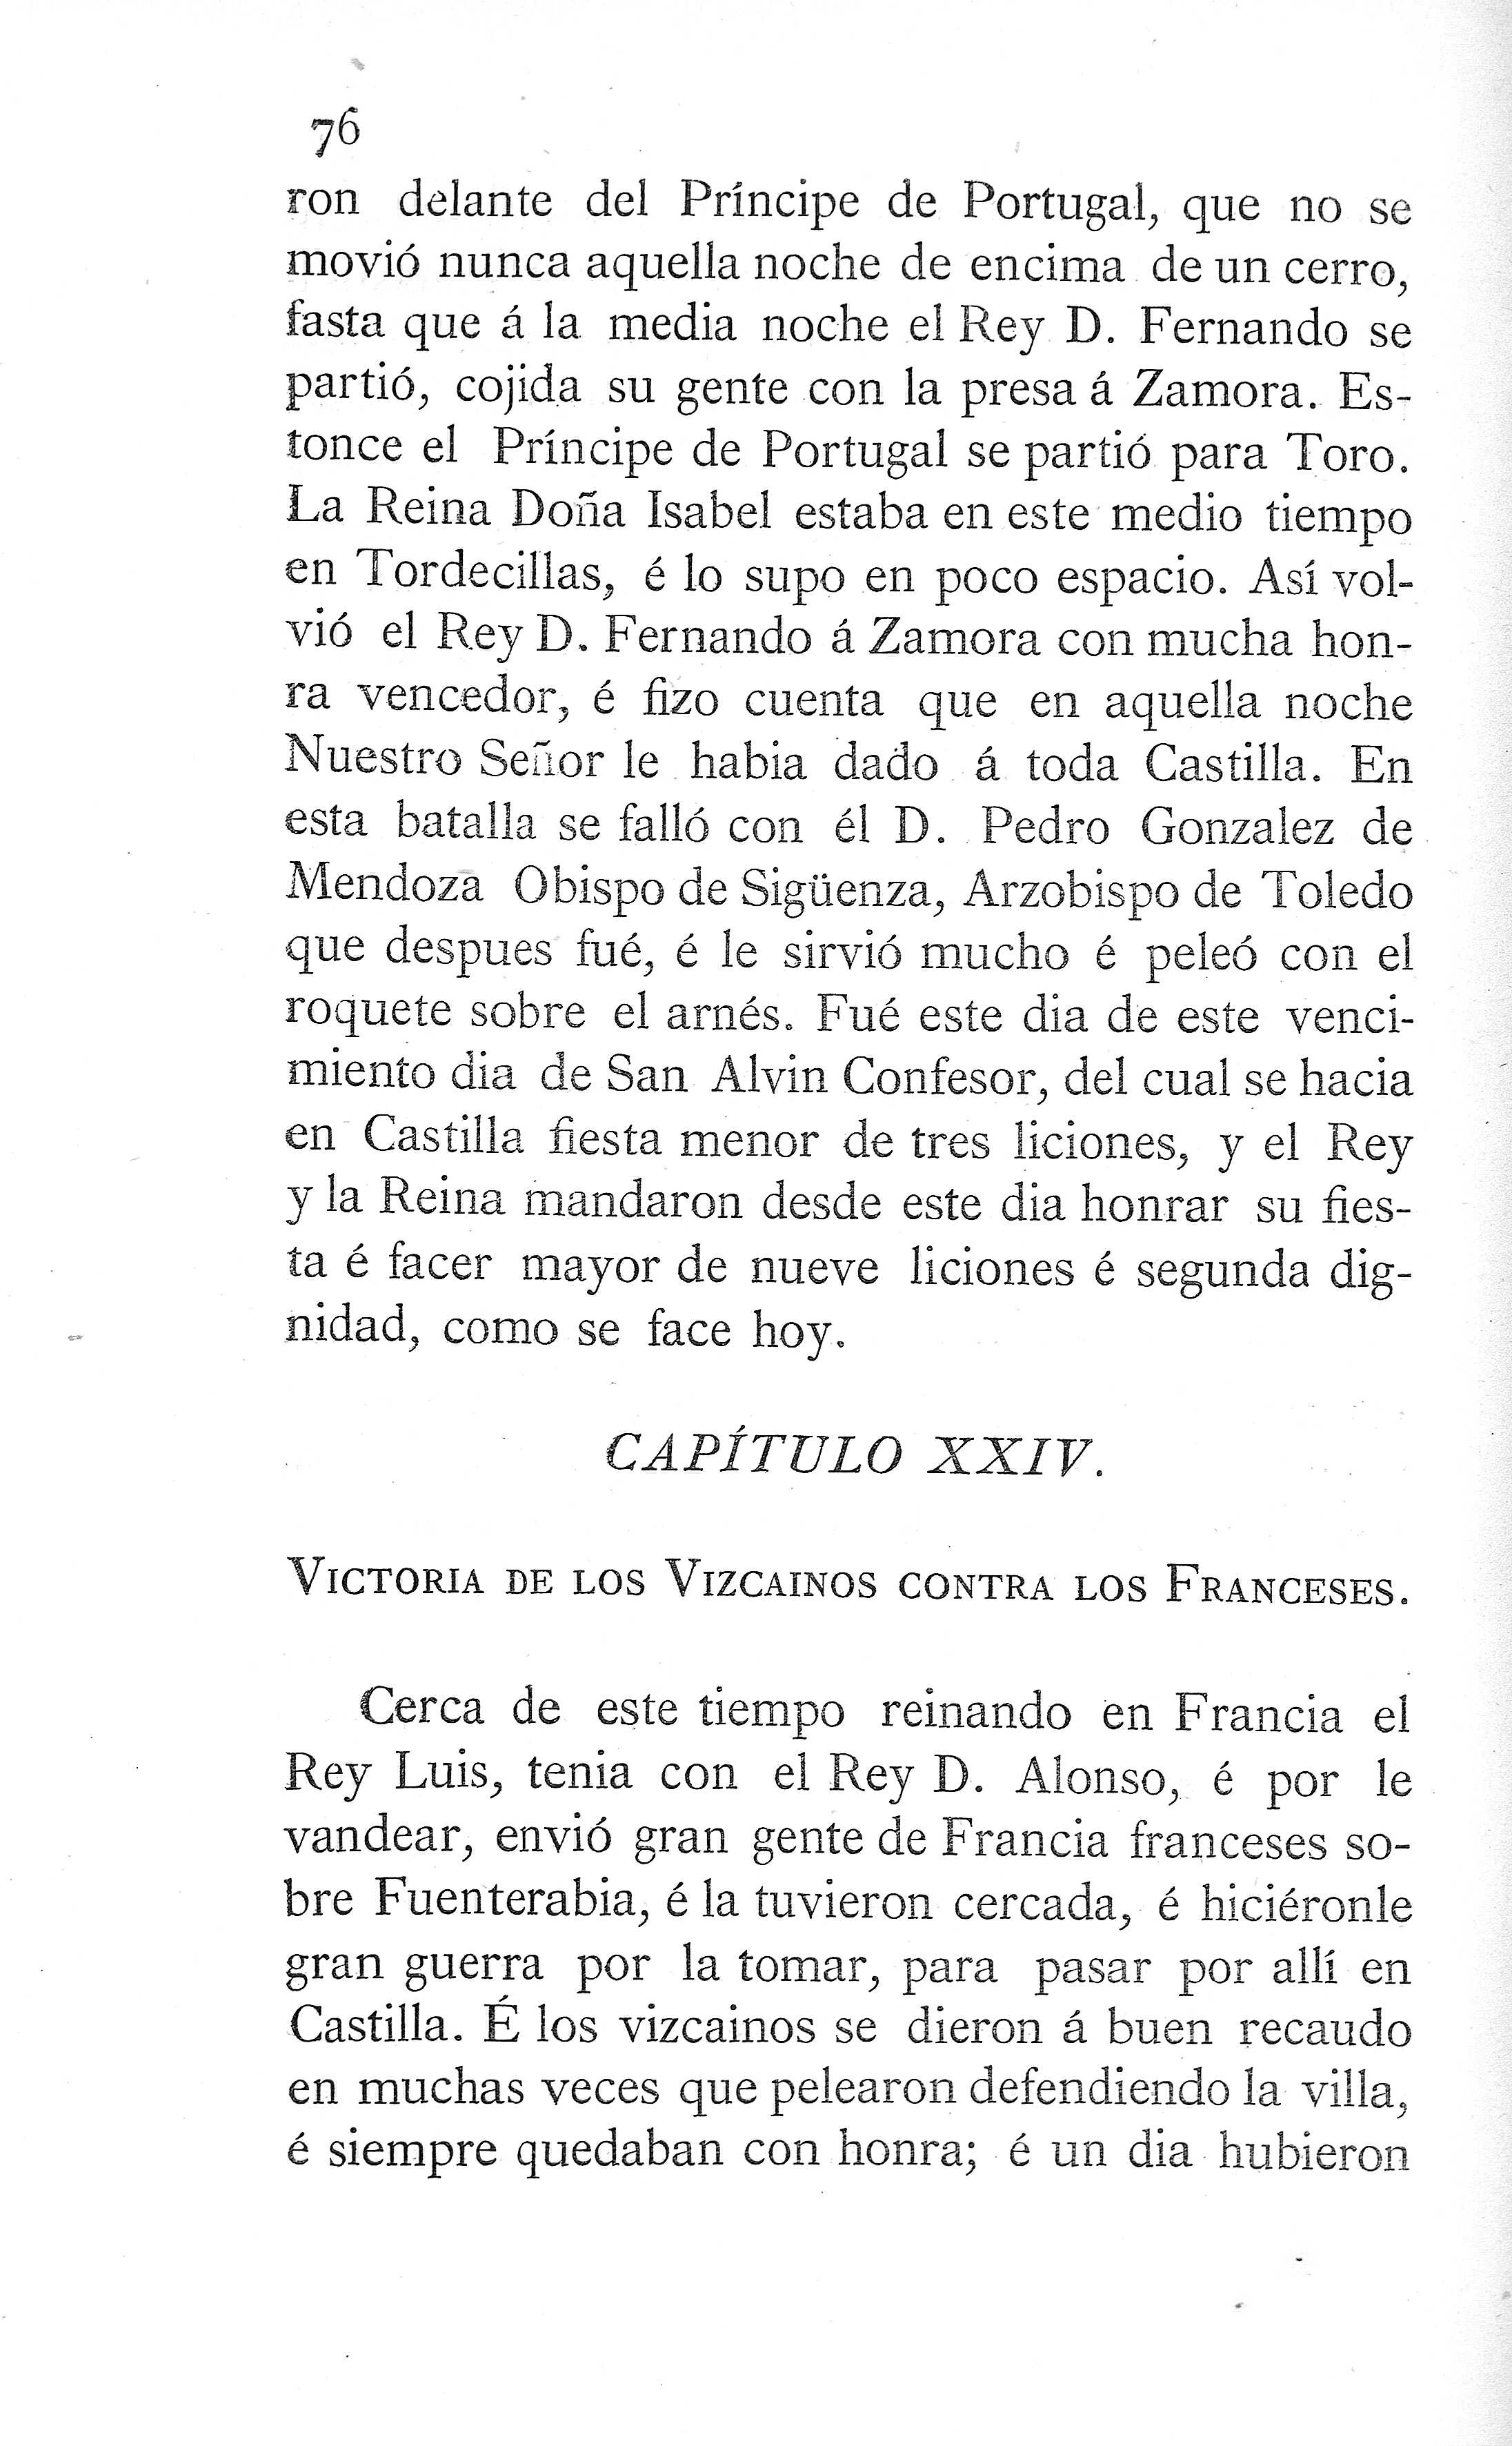 XXIV. Victoria de los vizcaínos contra los franceses